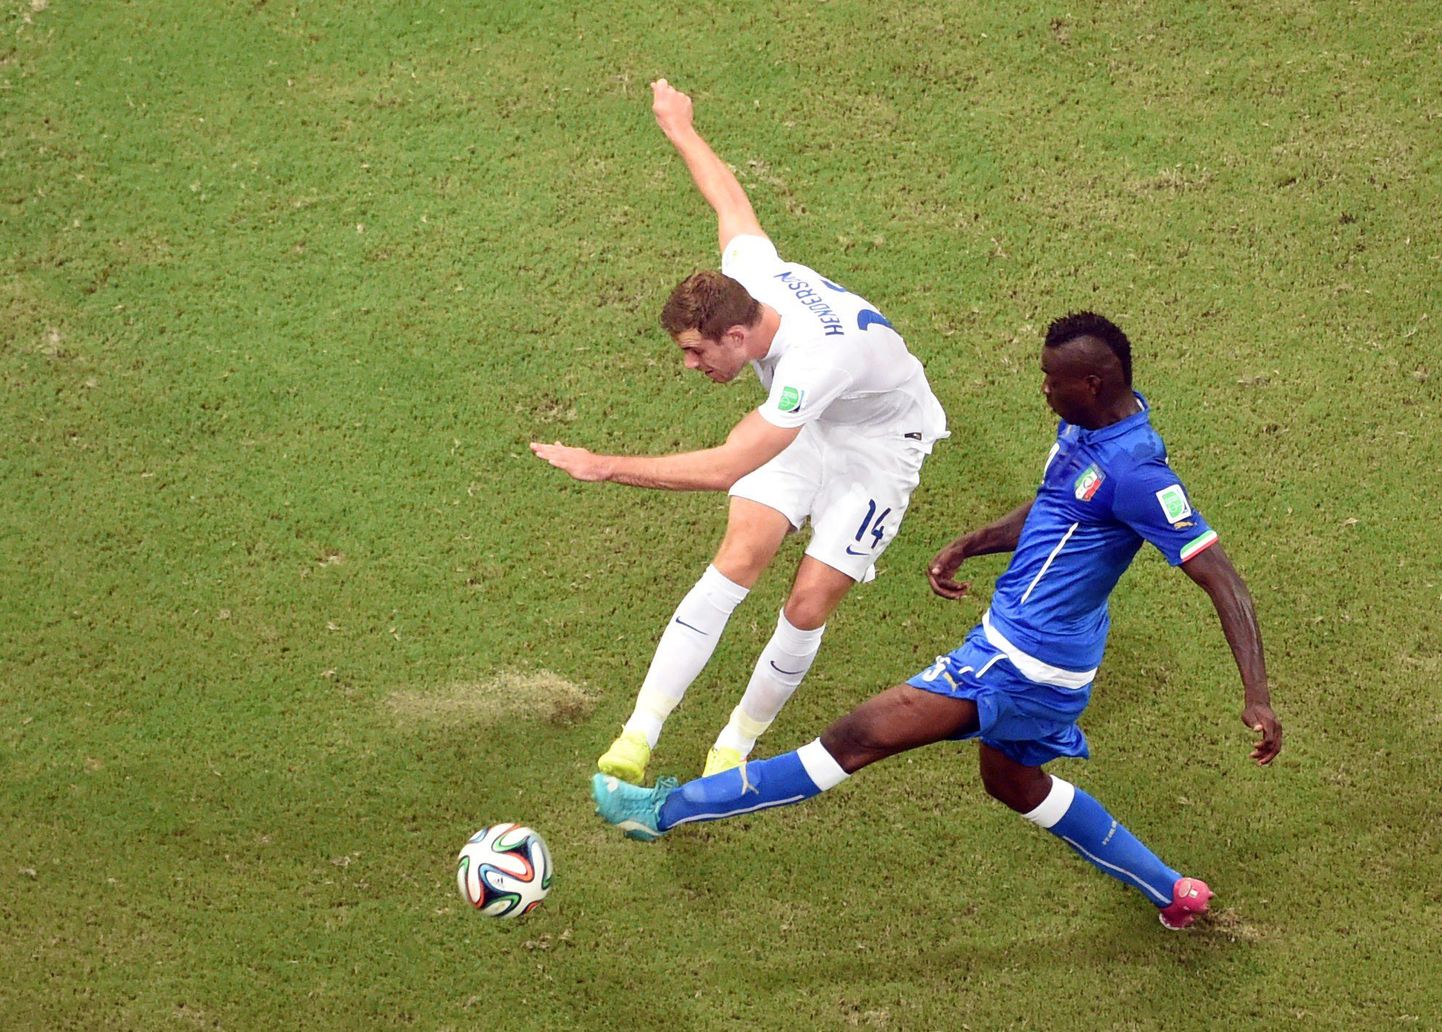 Момент матча Италия - Англия. В синей форме - Марио Балотелли.